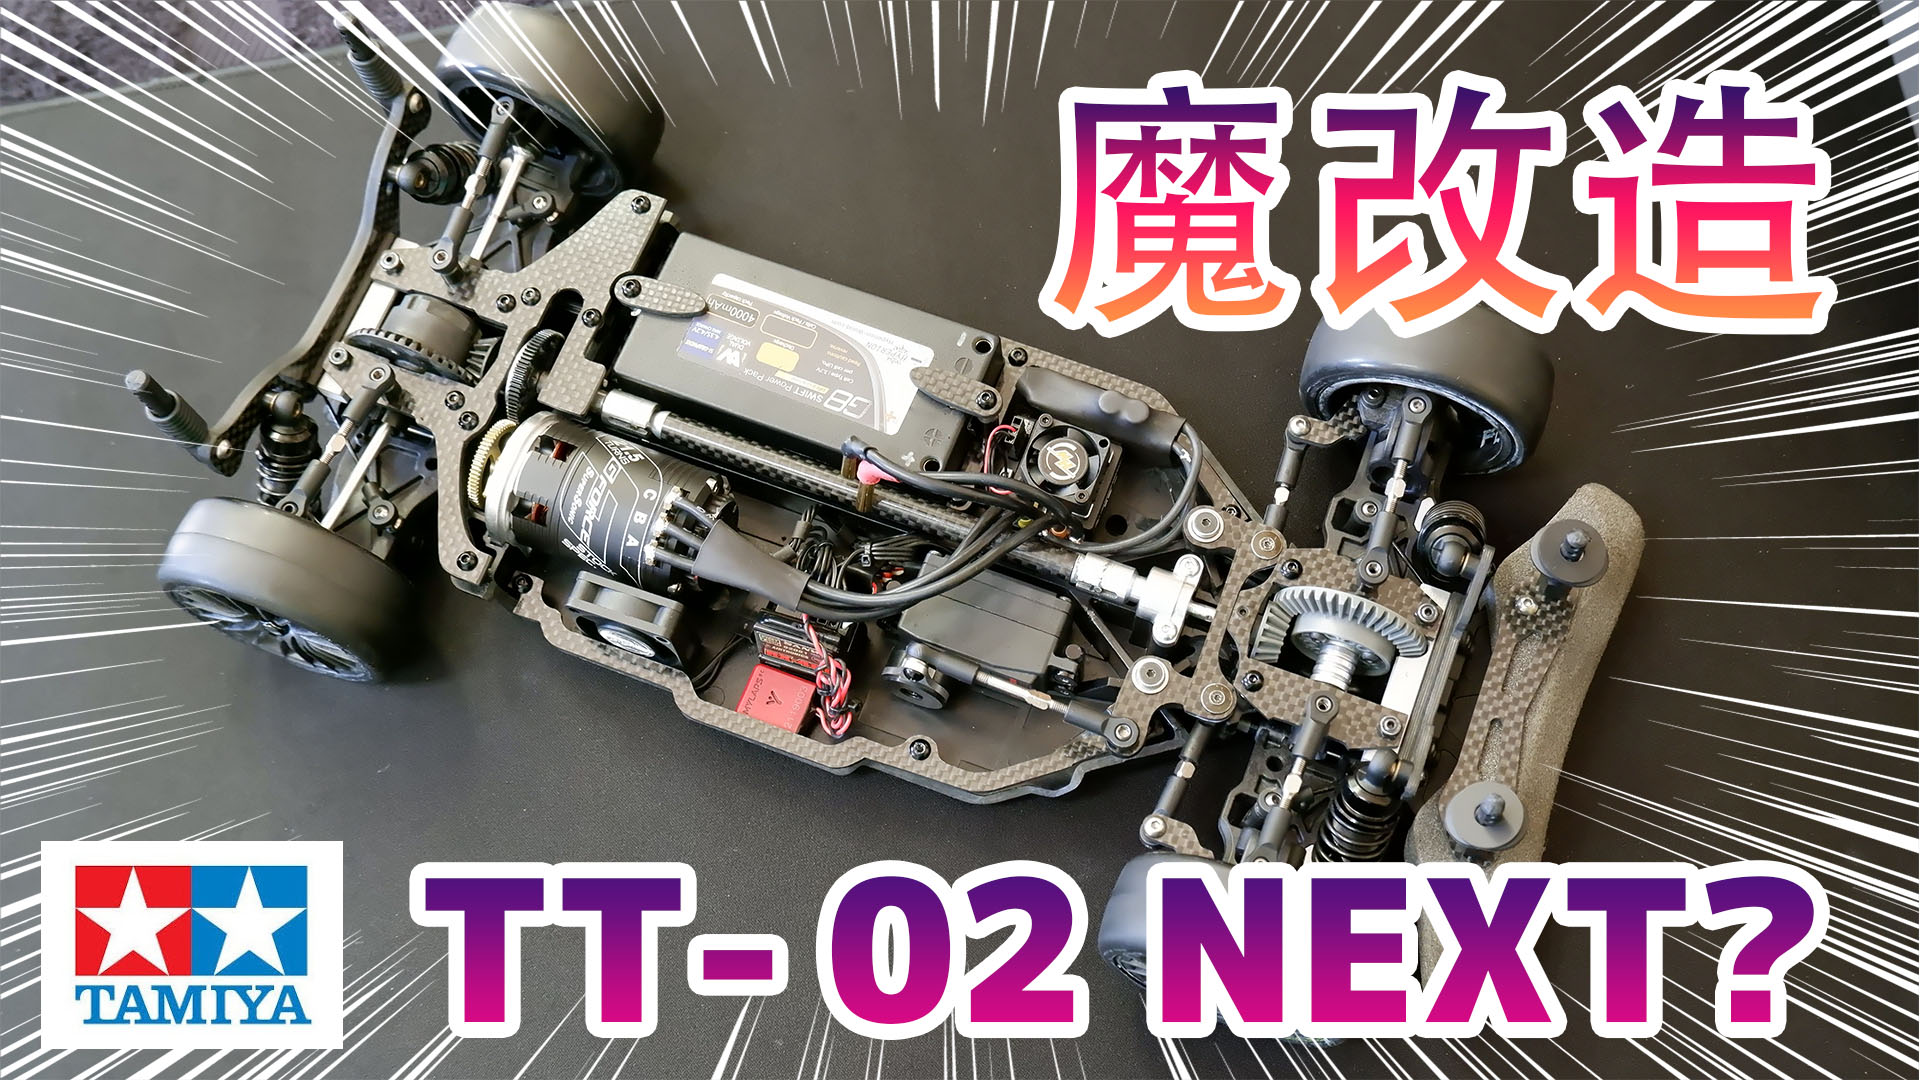 ラジコン魔改造 タミヤ Tt 02 Next バージョン 動画公開 ラジコンもんちぃ ラジコンニュースサイト